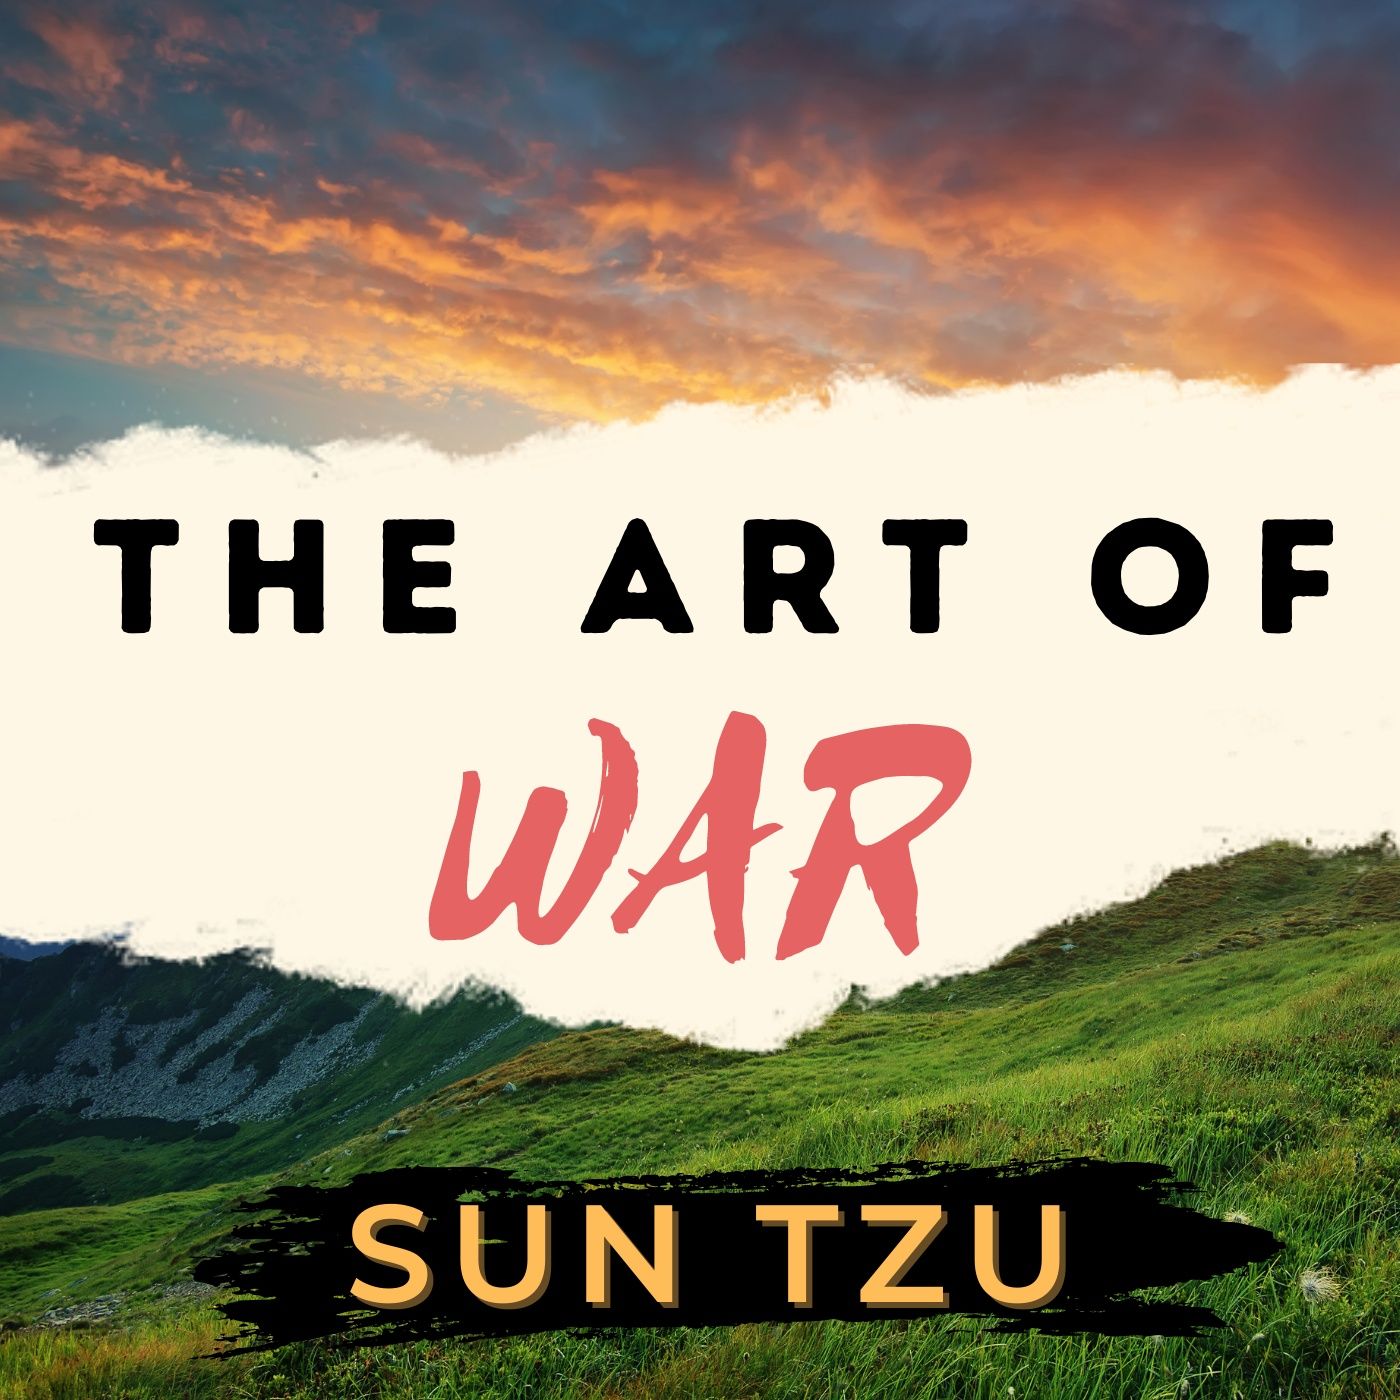 The Art of War – Sun Tzu